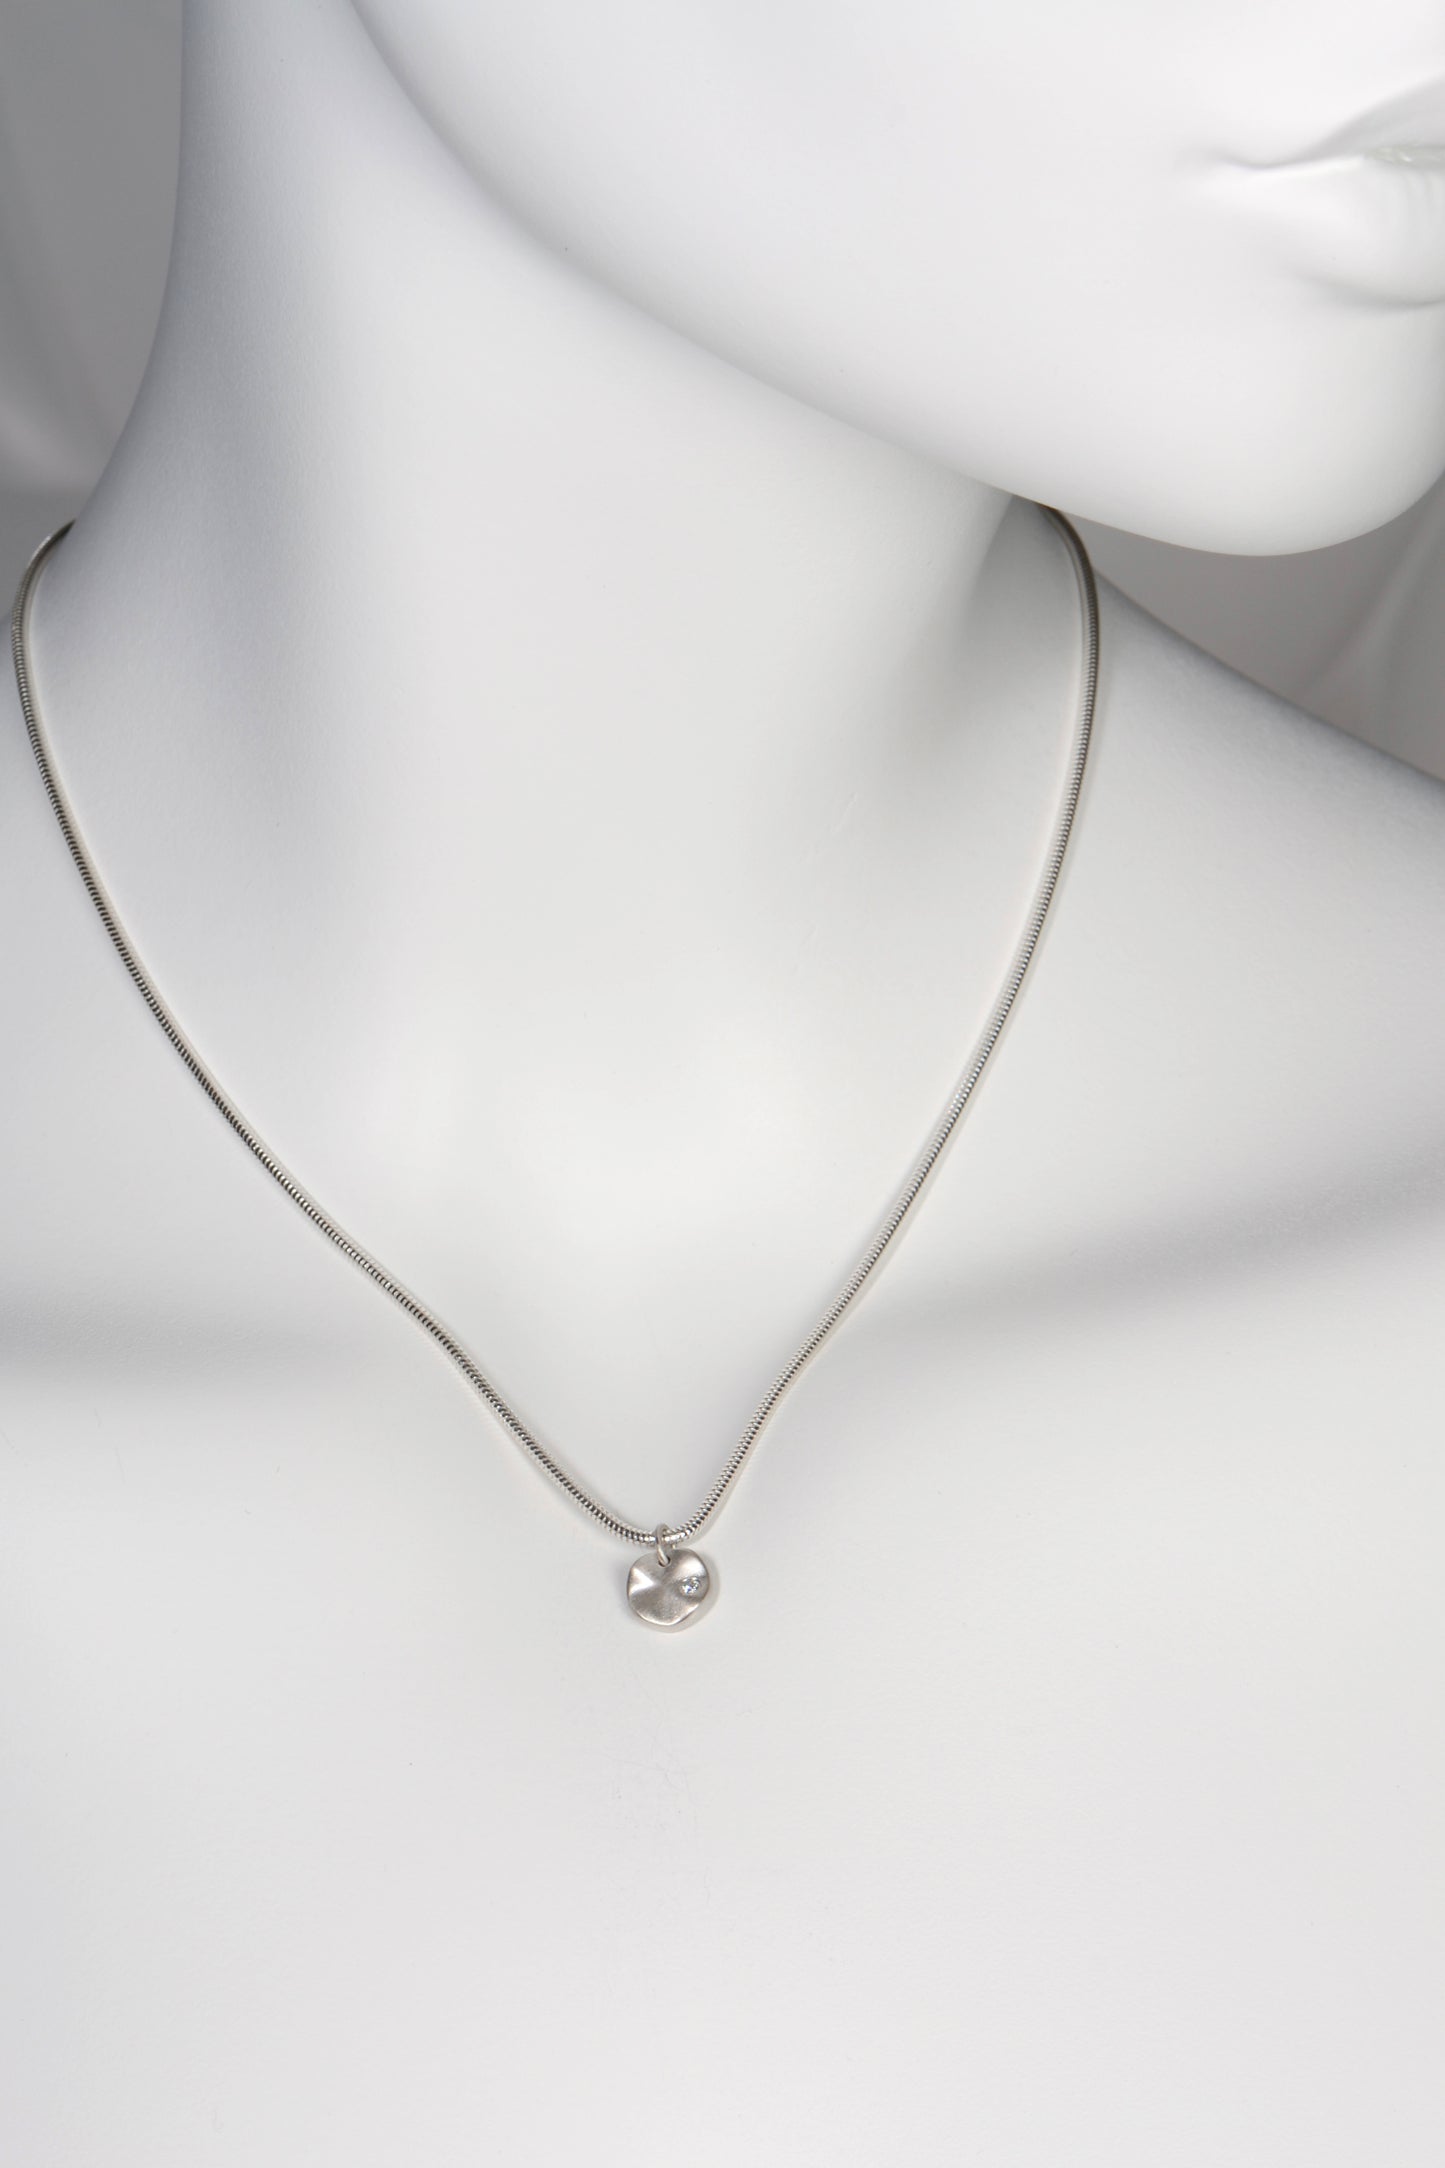 Ripple petite silver diamond necklace